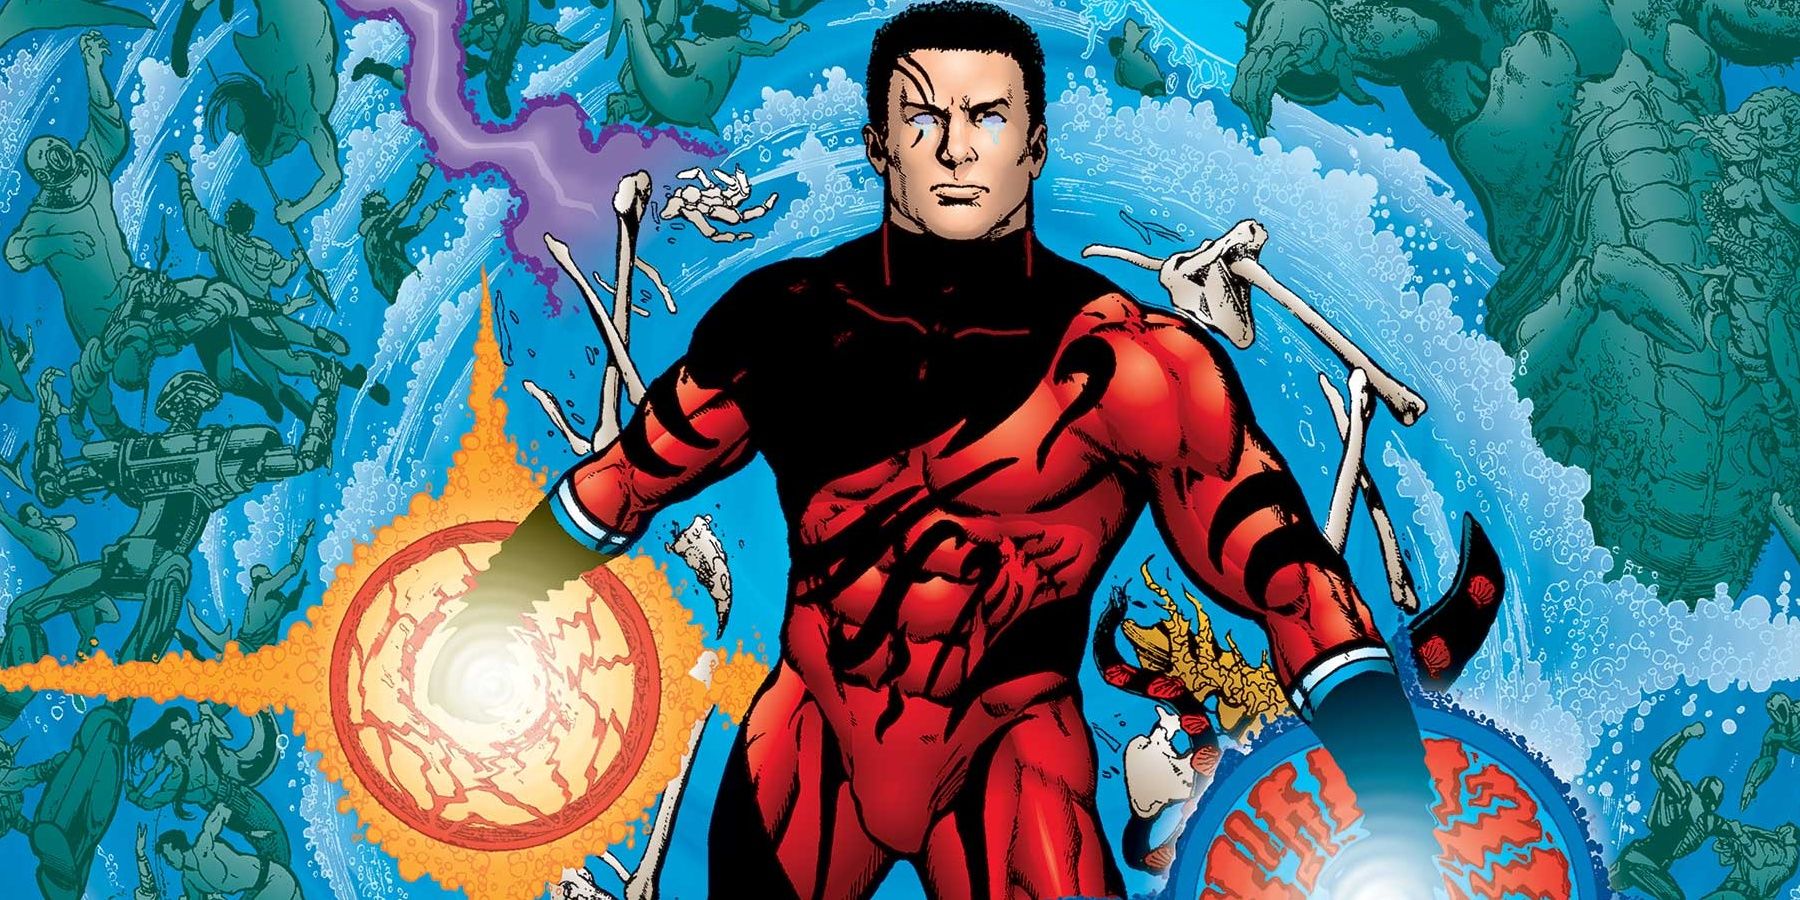 Tempest using his powers in Aquaman comics